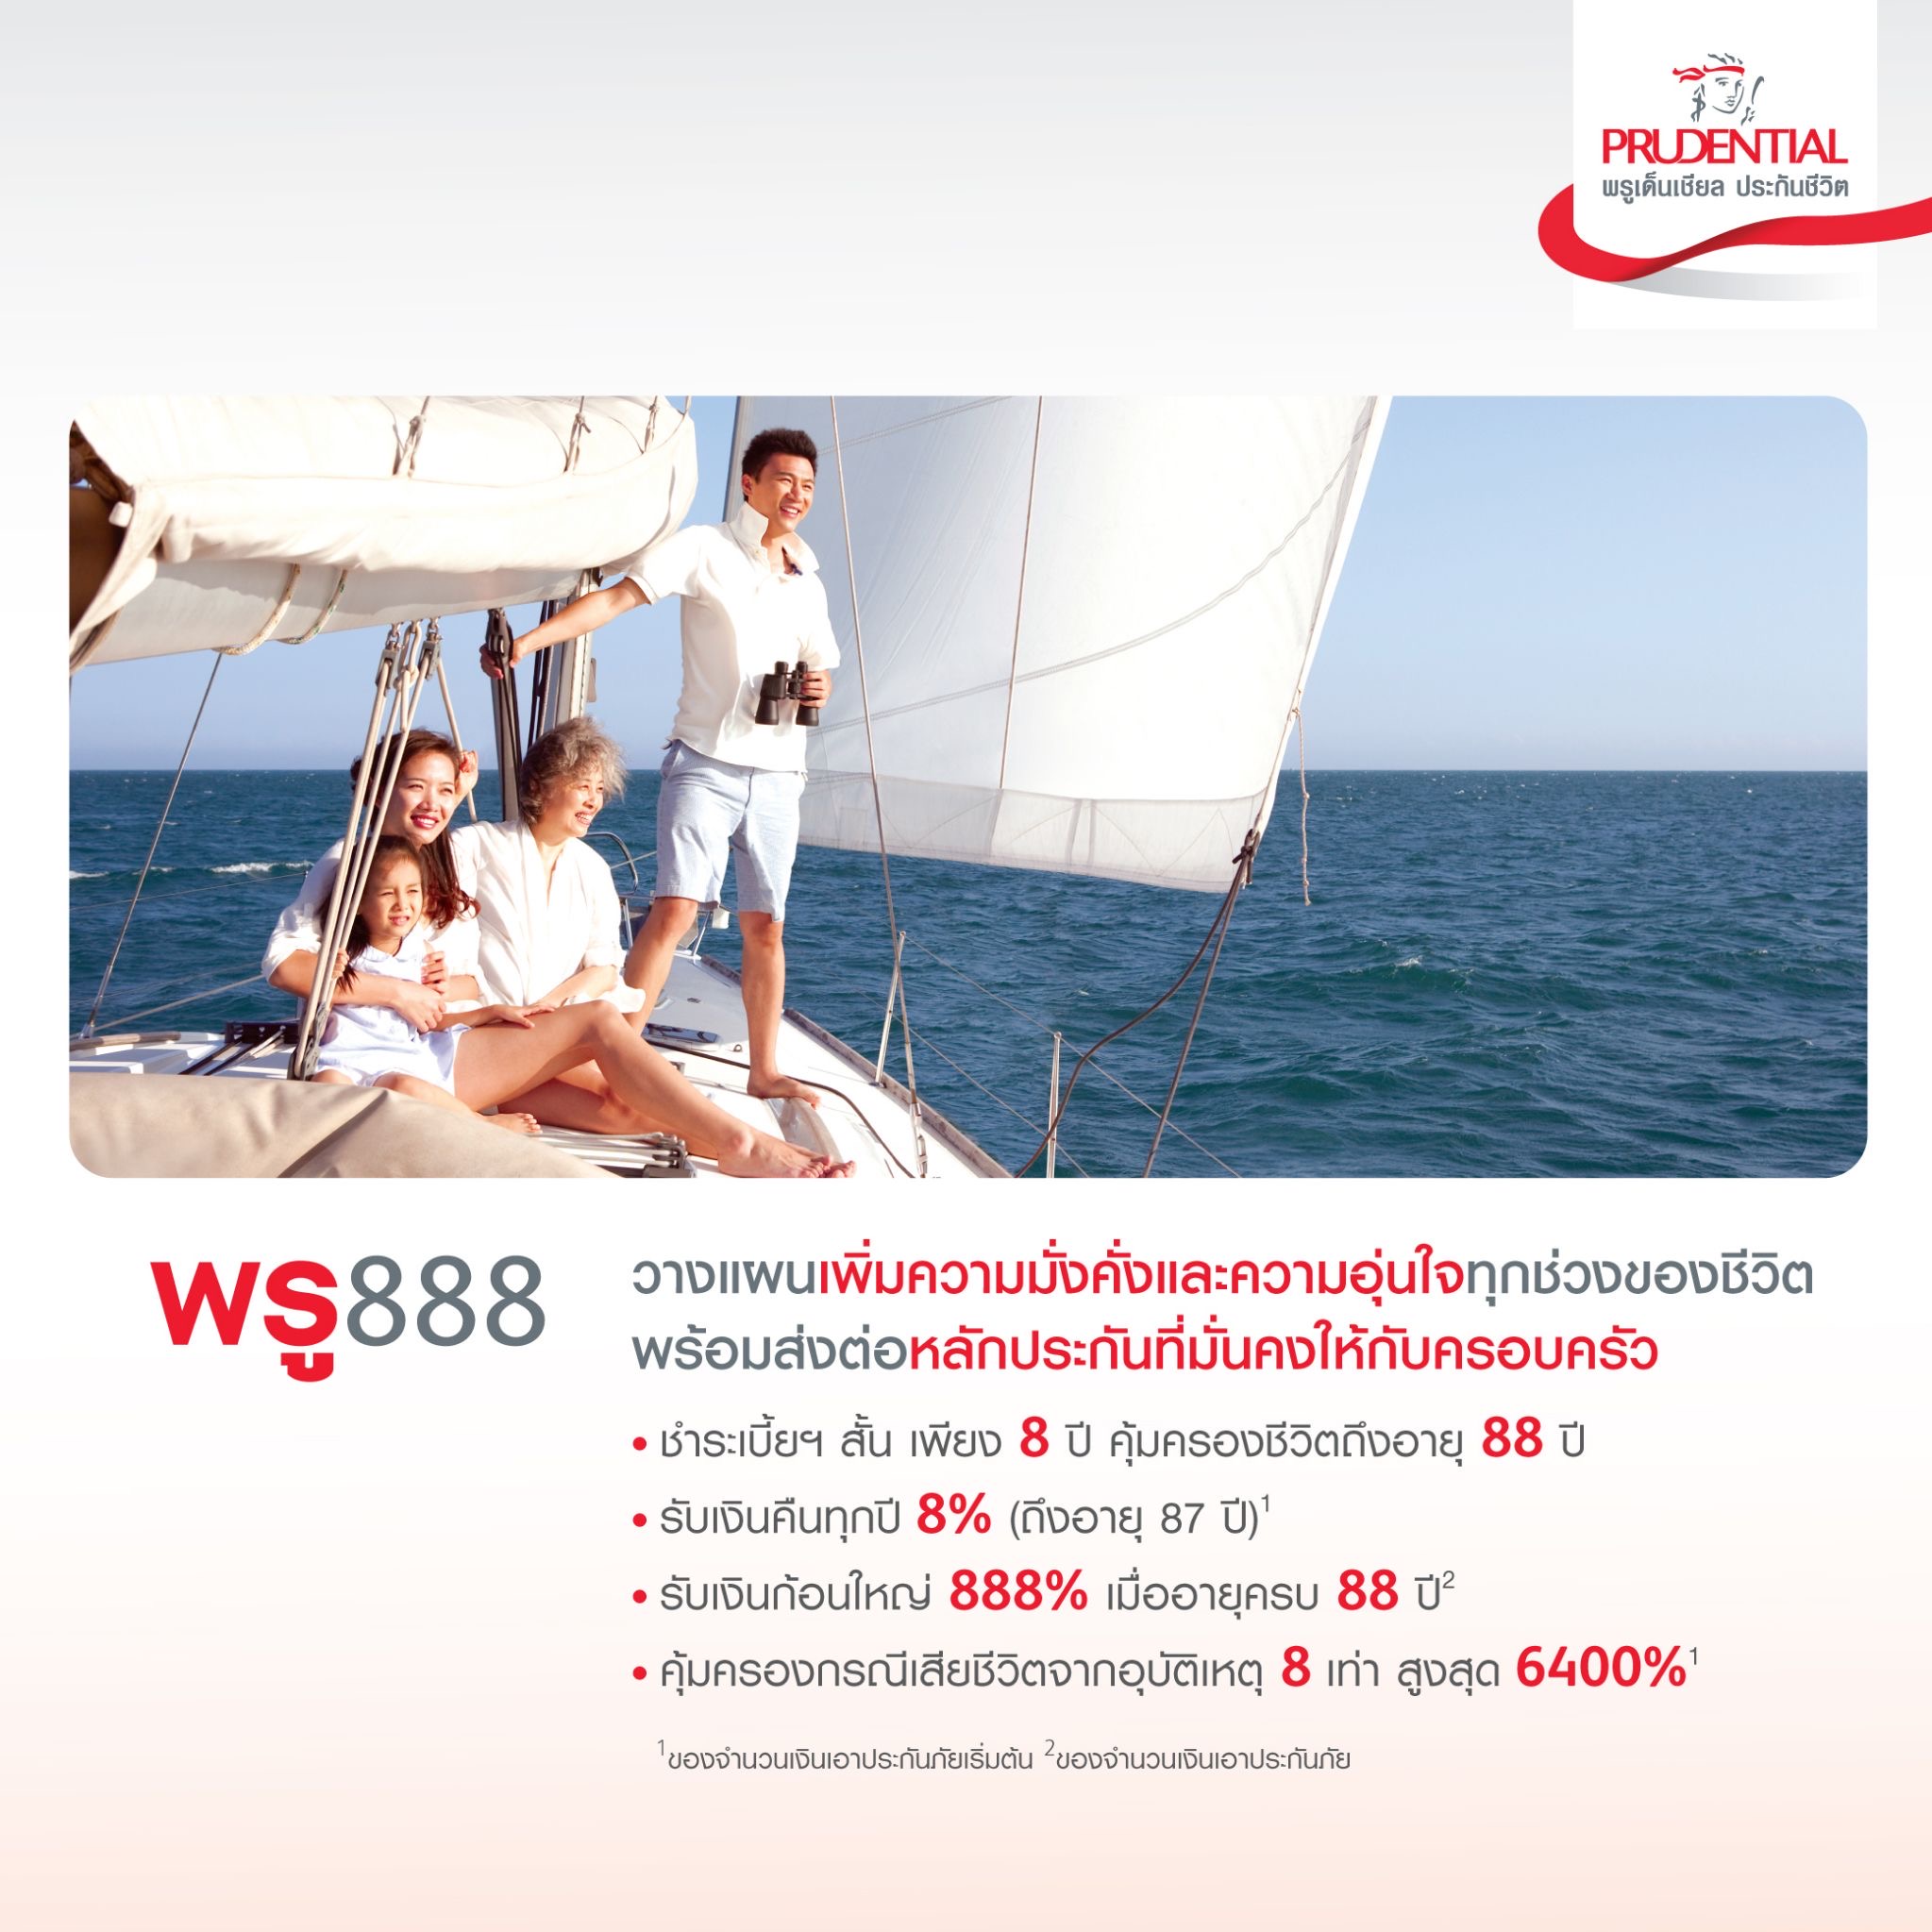 พรูเด็นเชียล ประเทศไทย ชวนวางแผนการเงินกับพรู 888